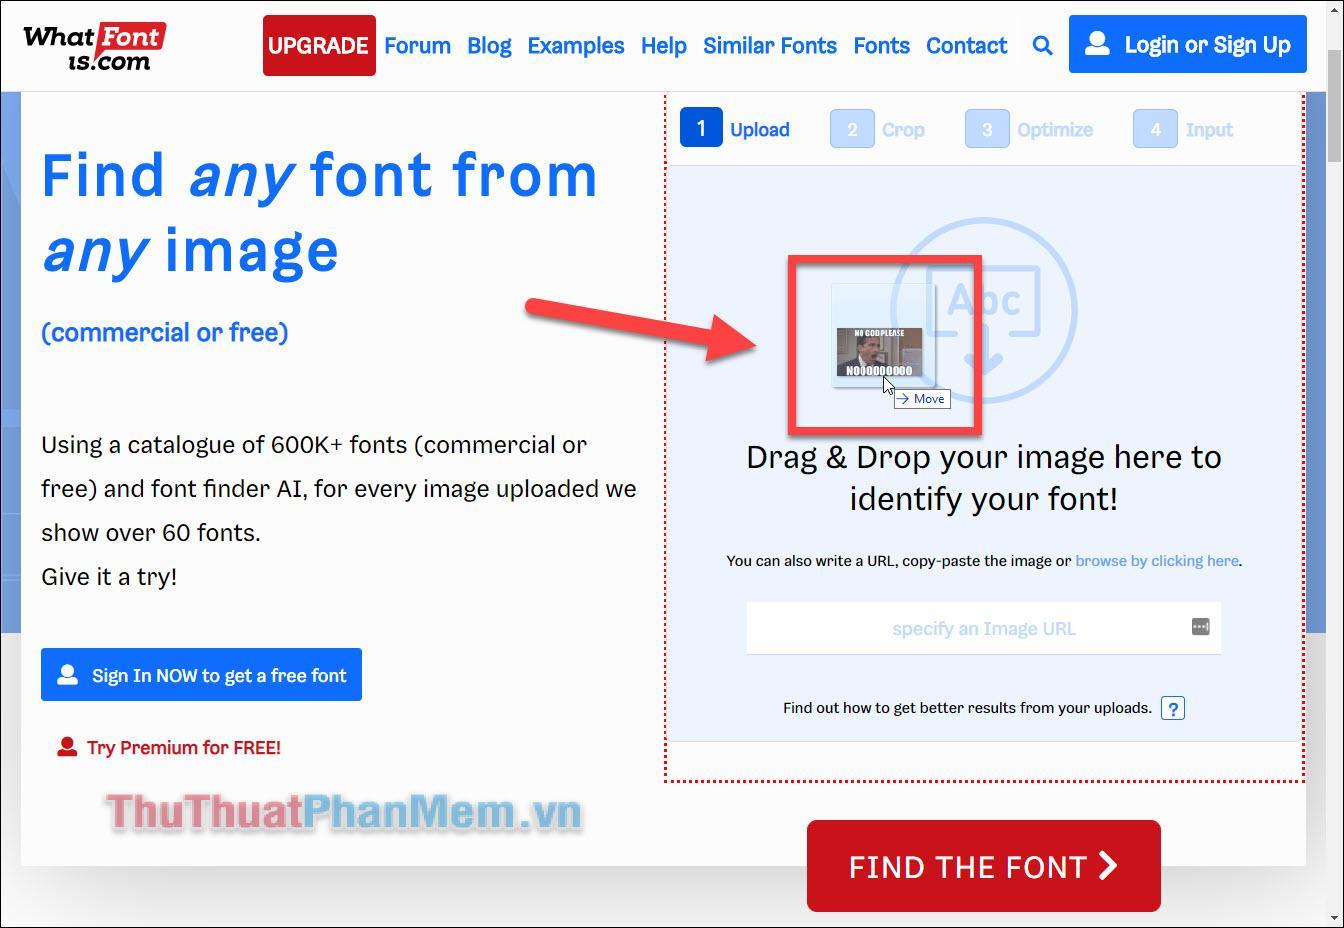 Thực hiện kéo hình ảnh và thả vào khung Drag & Drop your image here to identify your font